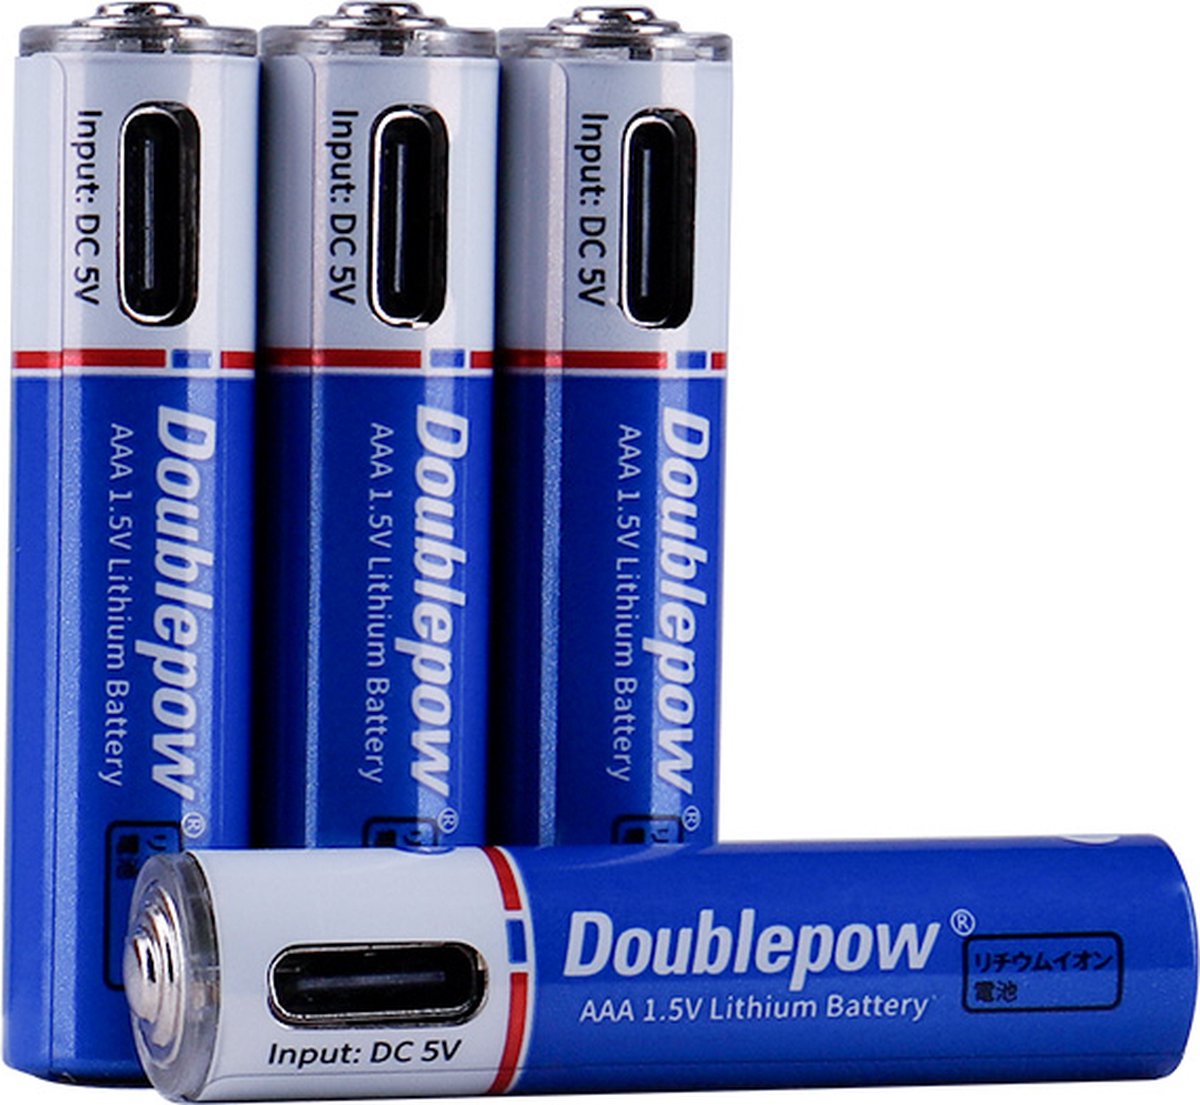 MaxiQualis USB Oplaadbare Li-ion AAA Batterij 600mWh - Marktleider Hoge Capaciteit - AAA Batterijen - Oplaadbaar via USB-C (4 Stuks)